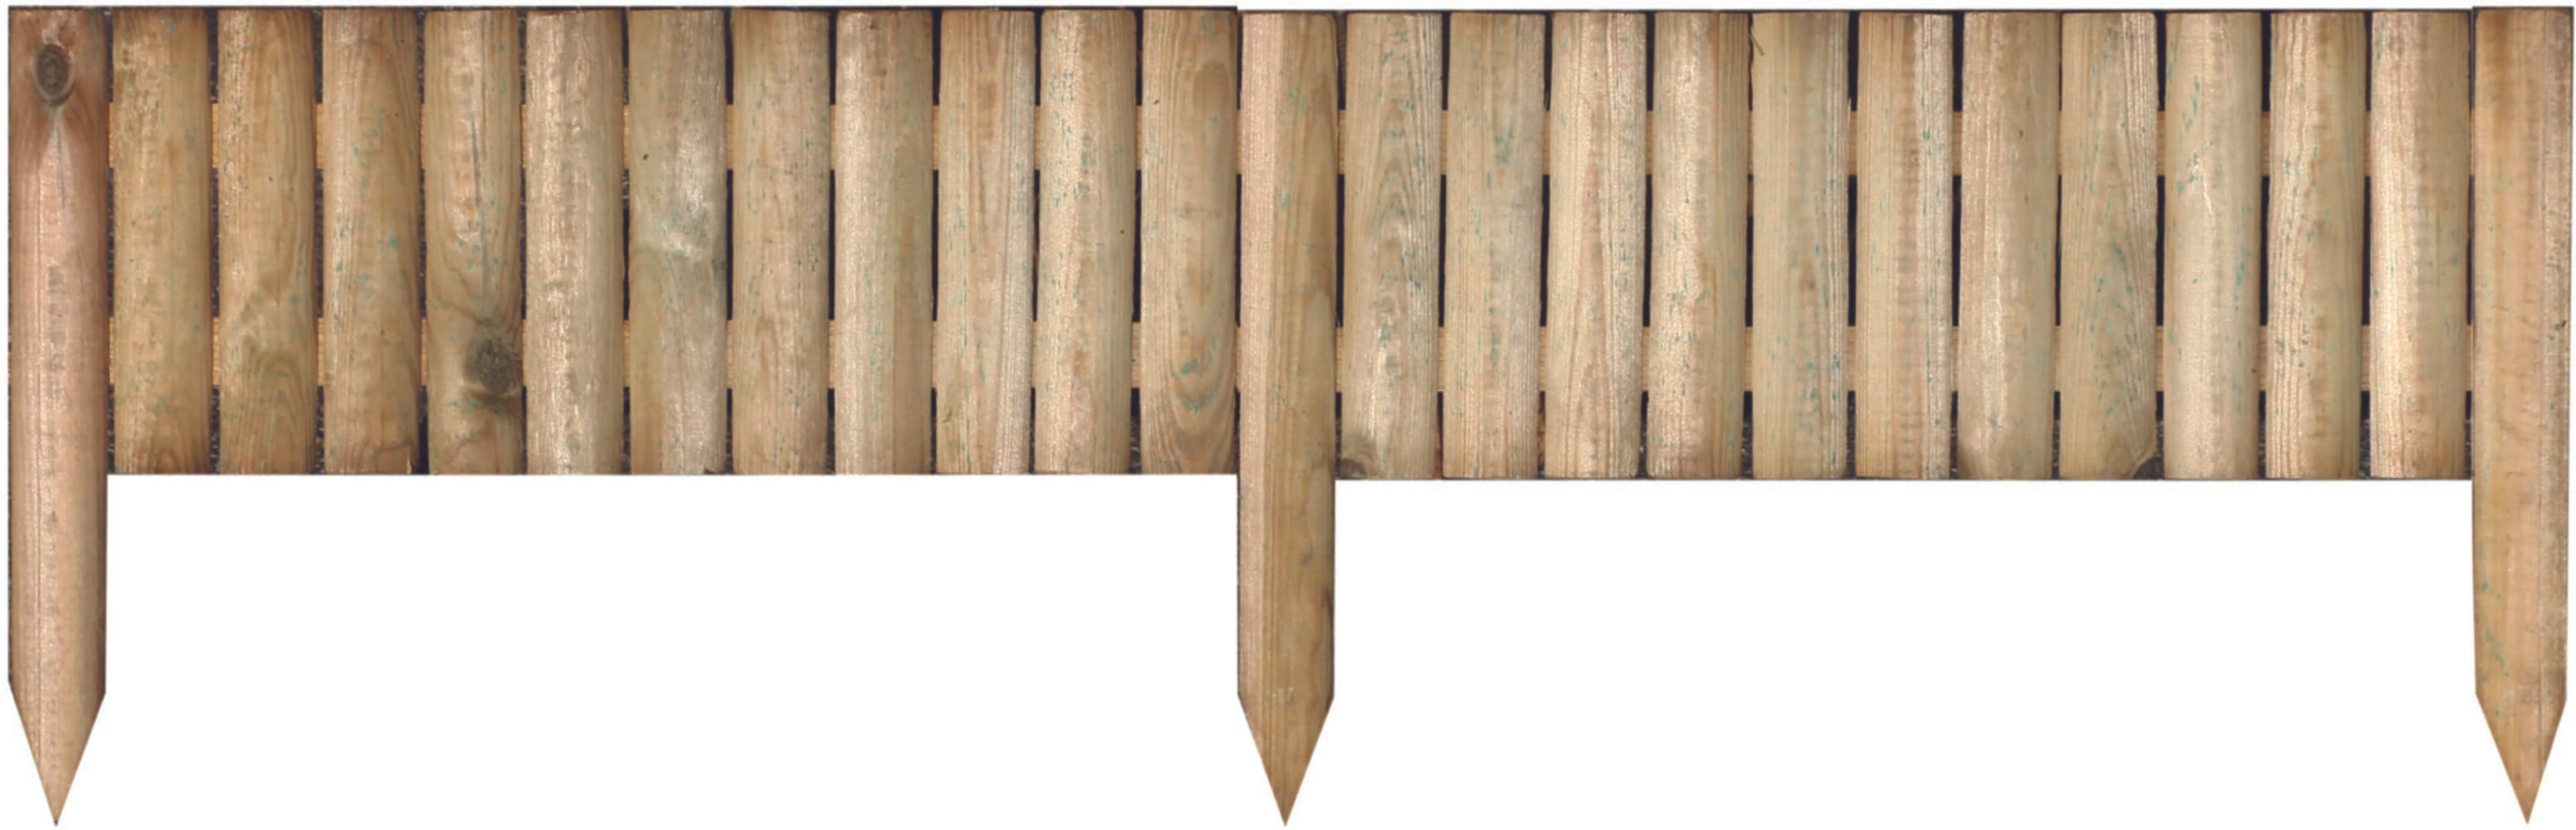 Bordure en bois en rouleau - basse - Jardipolys